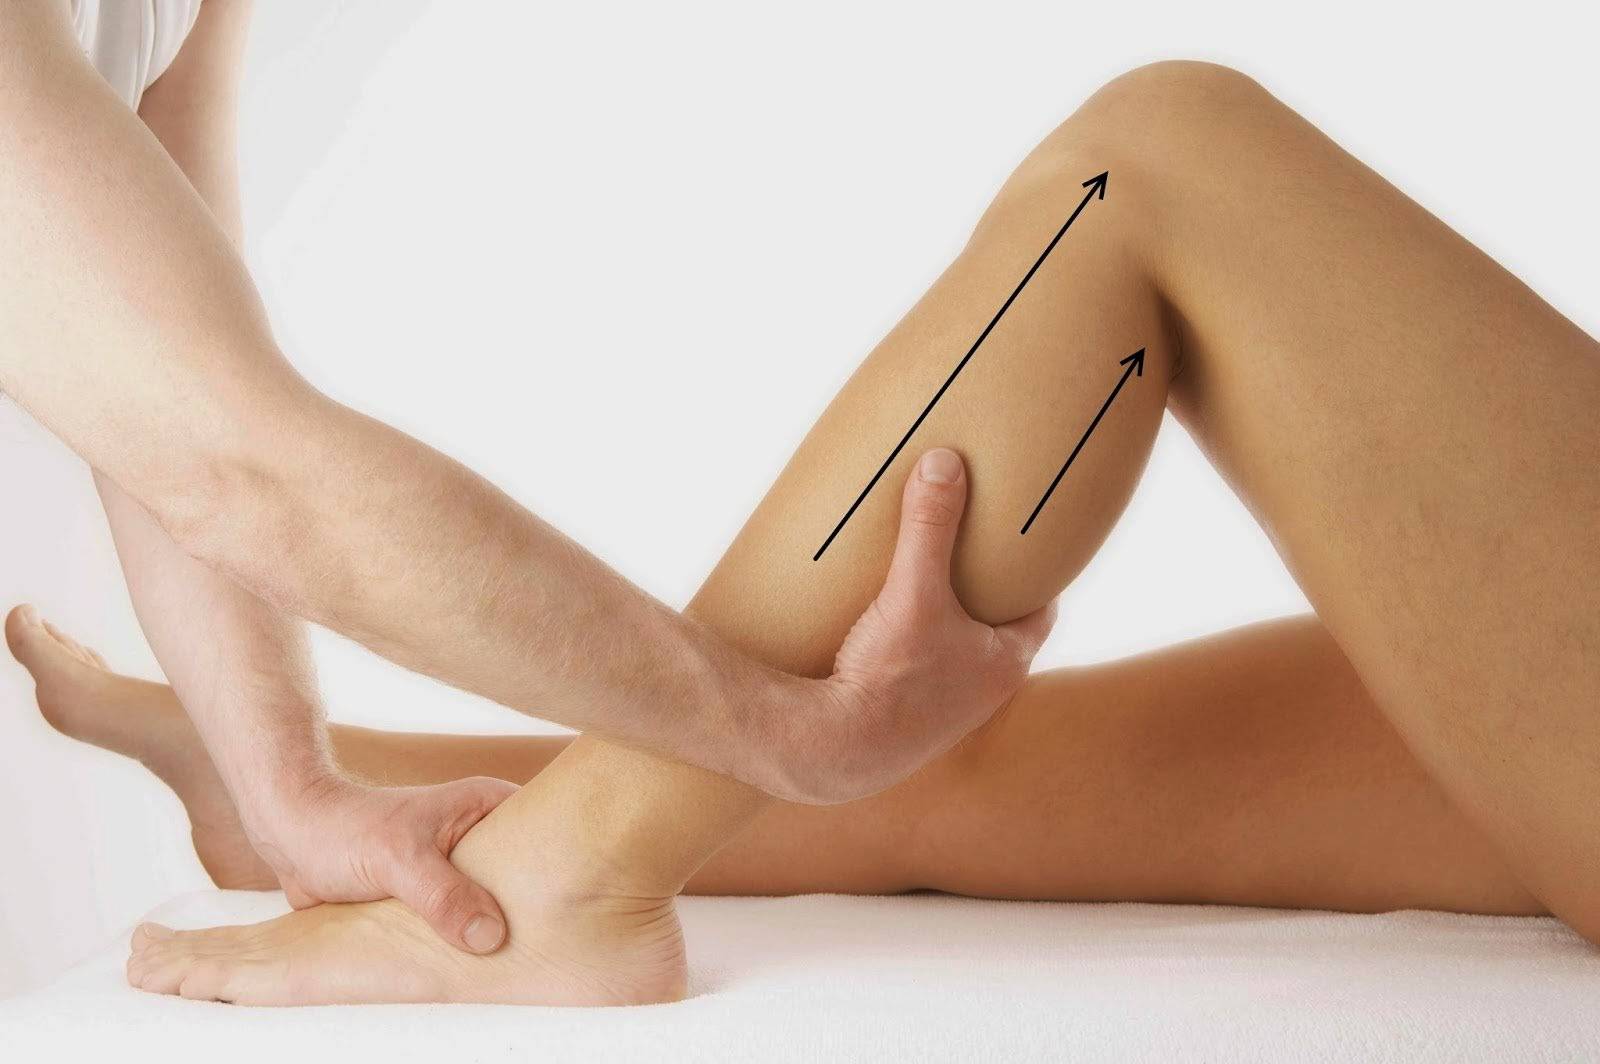 Hướng dẫn kỹ thuật massage bắp chân đơn giản, hiệu quả